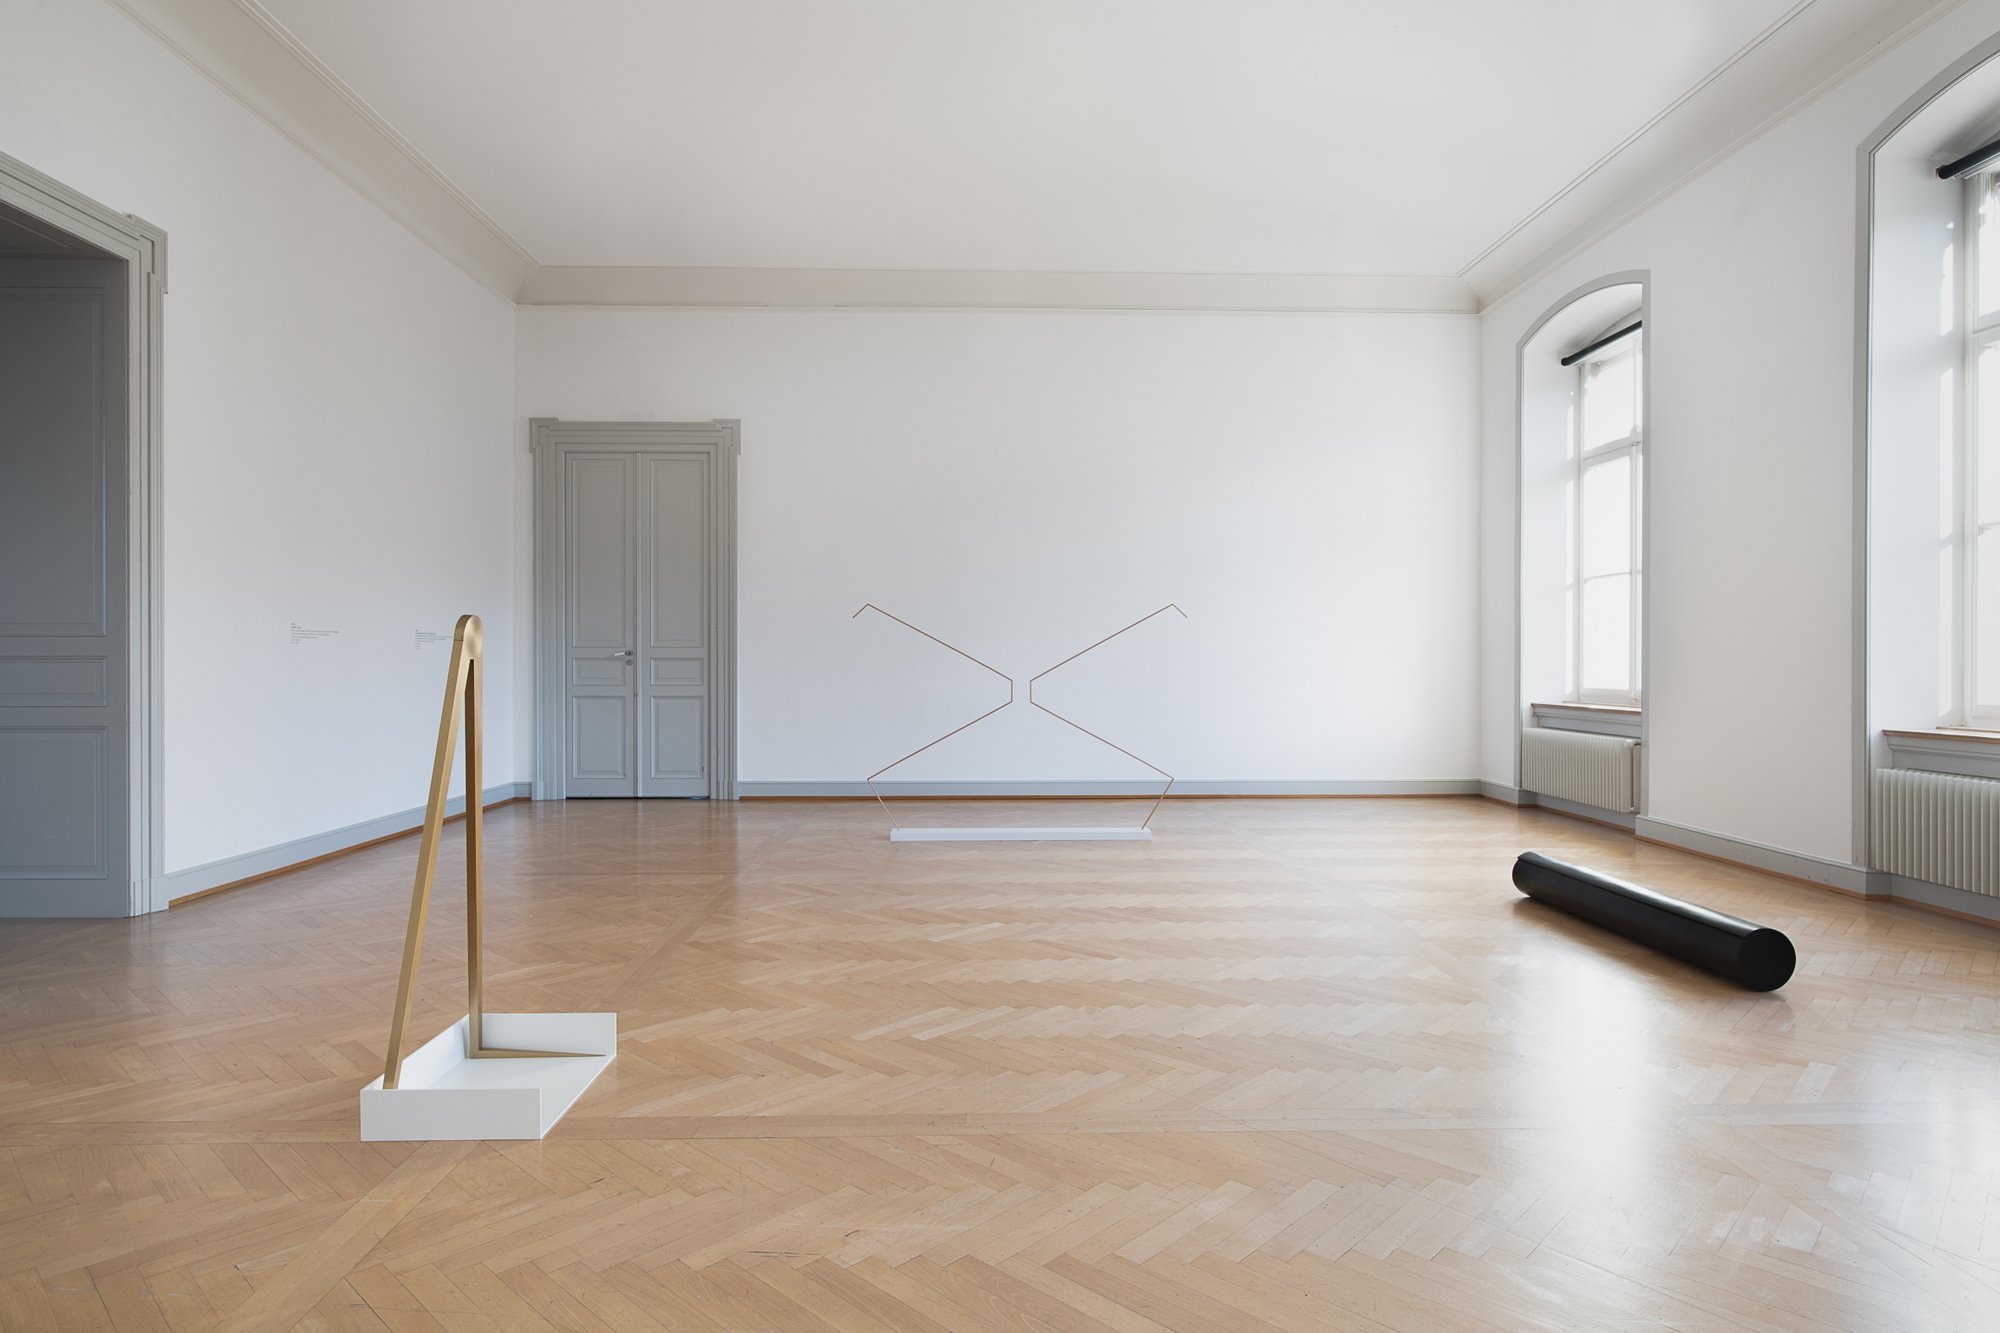 Installation view, Iman Issa, Surrogates, Kunstmuseum St. Gallen, St. Gallen, 2019